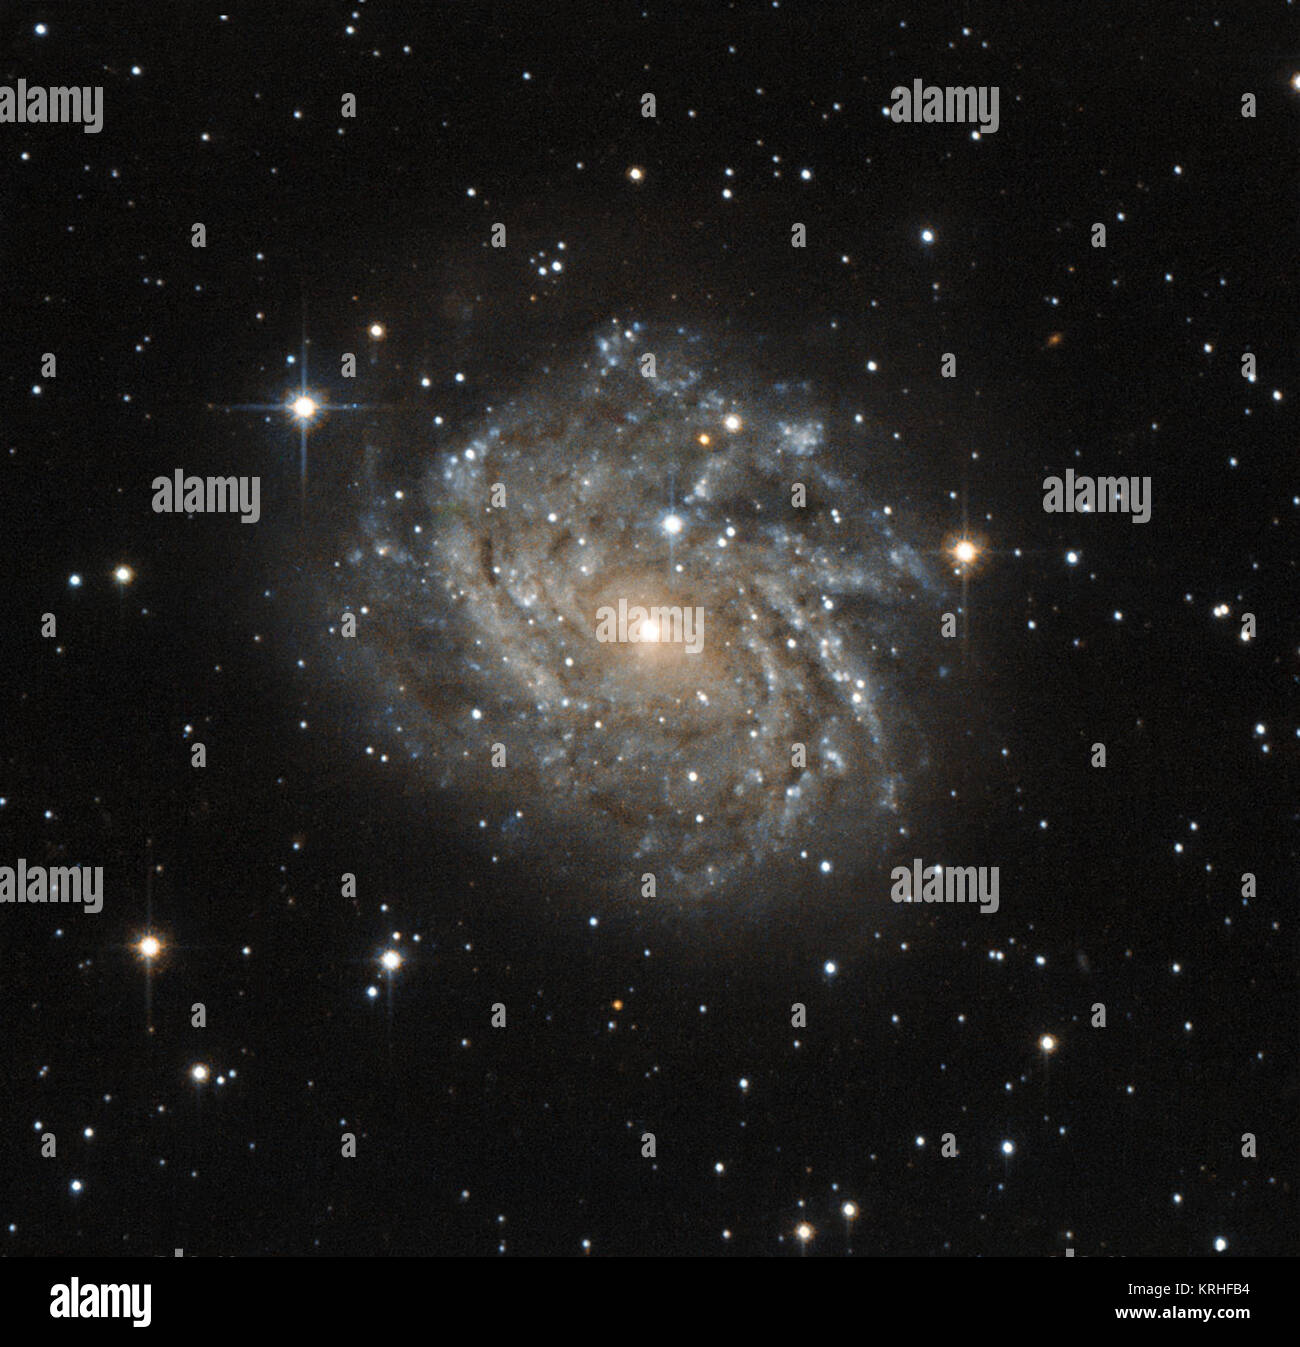 Cette galaxie peu connu, nommé officiellement, mais04542829-6625280 J plus souvent appelé 89996, LEDA est un exemple classique d'une galaxie spirale. La galaxie est un peu comme notre propre galaxie, la Voie lactée. La galaxie est en forme de disque vu sur visage, révélant la structure d'enroulement des bras spiraux. Des taches sombres dans ces bras spiraux sont en fait de la poussière et du gaz - la matière première des nouvelles étoiles. Les nombreux jeunes étoiles qui se forment dans ces régions que les bras spiraux apparaissent des et bleuâtre. La galaxie se trouve dans un quartier animé du ciel nocturne à l'intérieur de la constellation de Dorado (l'espadon), et semble très Banque D'Images